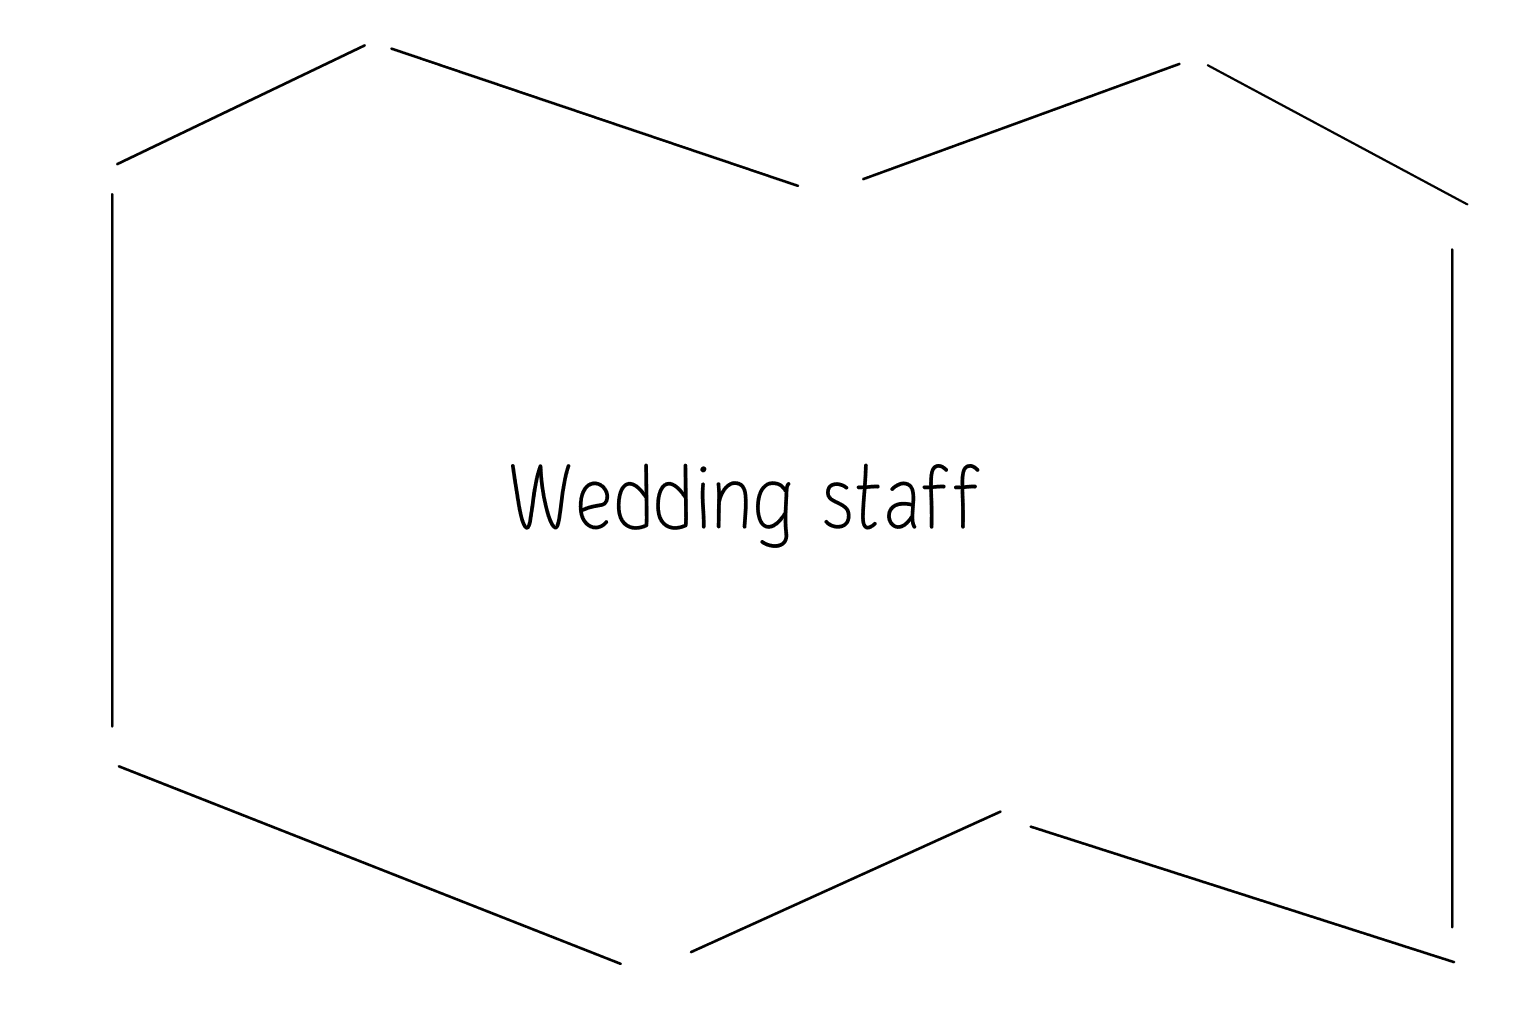 Ilustrace nápovědy ke svatebnímu dni